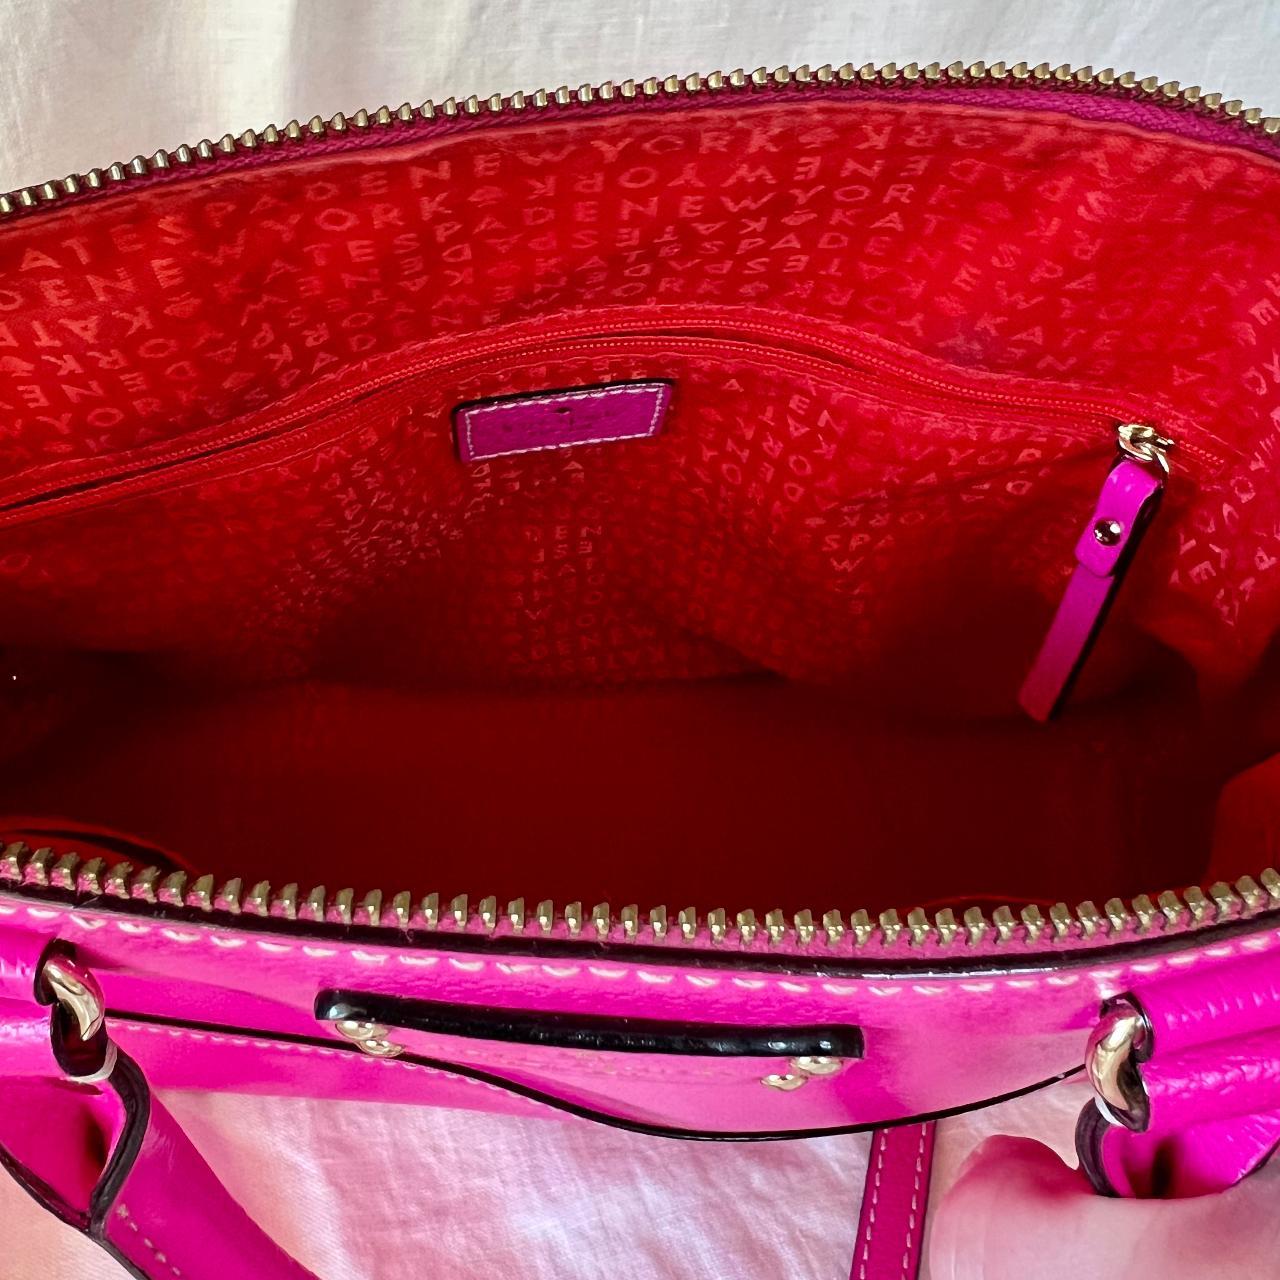 Kate Spade hot pink crossbody bag #purse #katespade - Depop